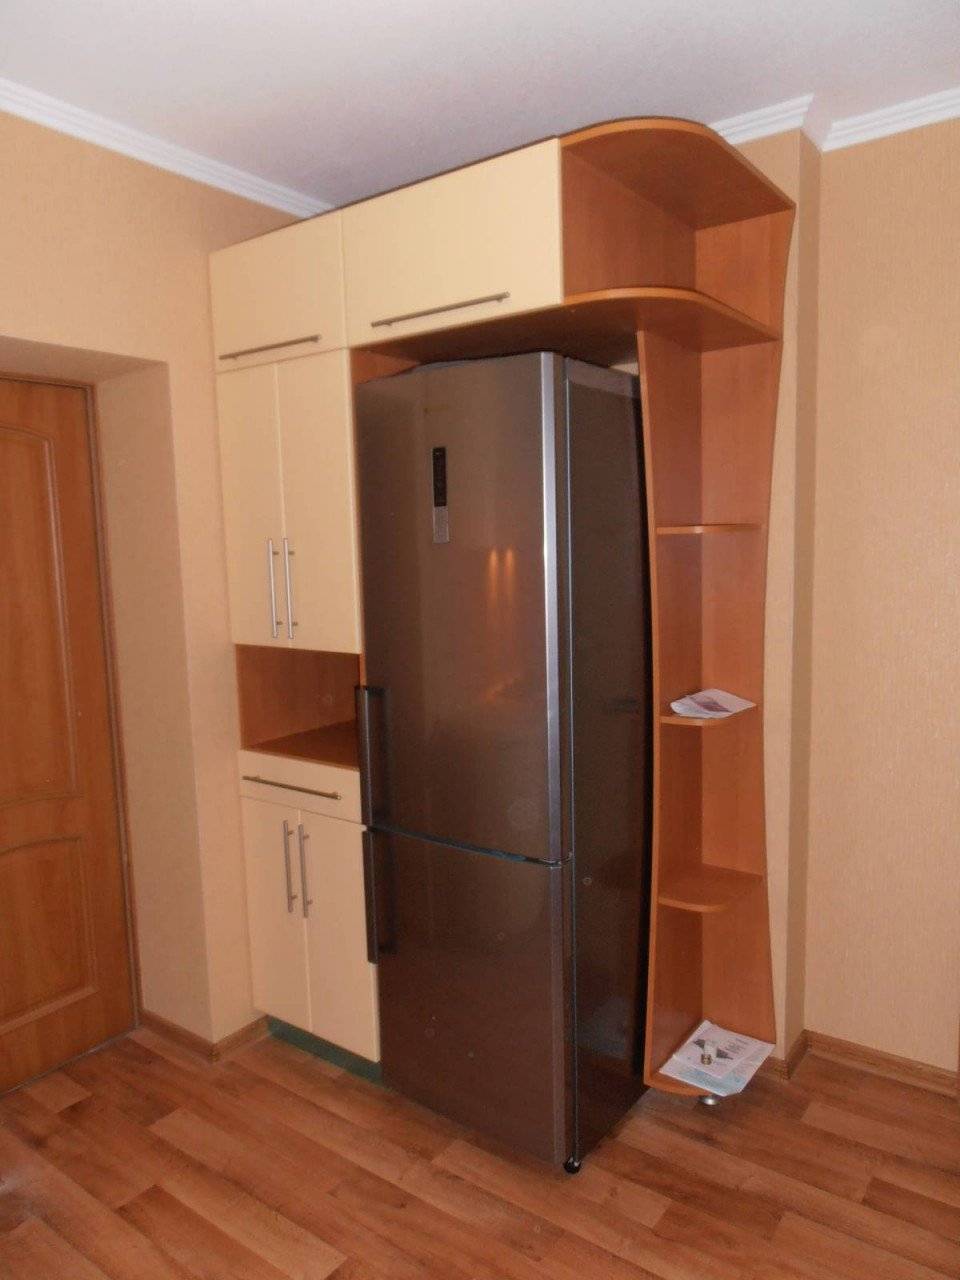 Холодильник В Прихожей Фото